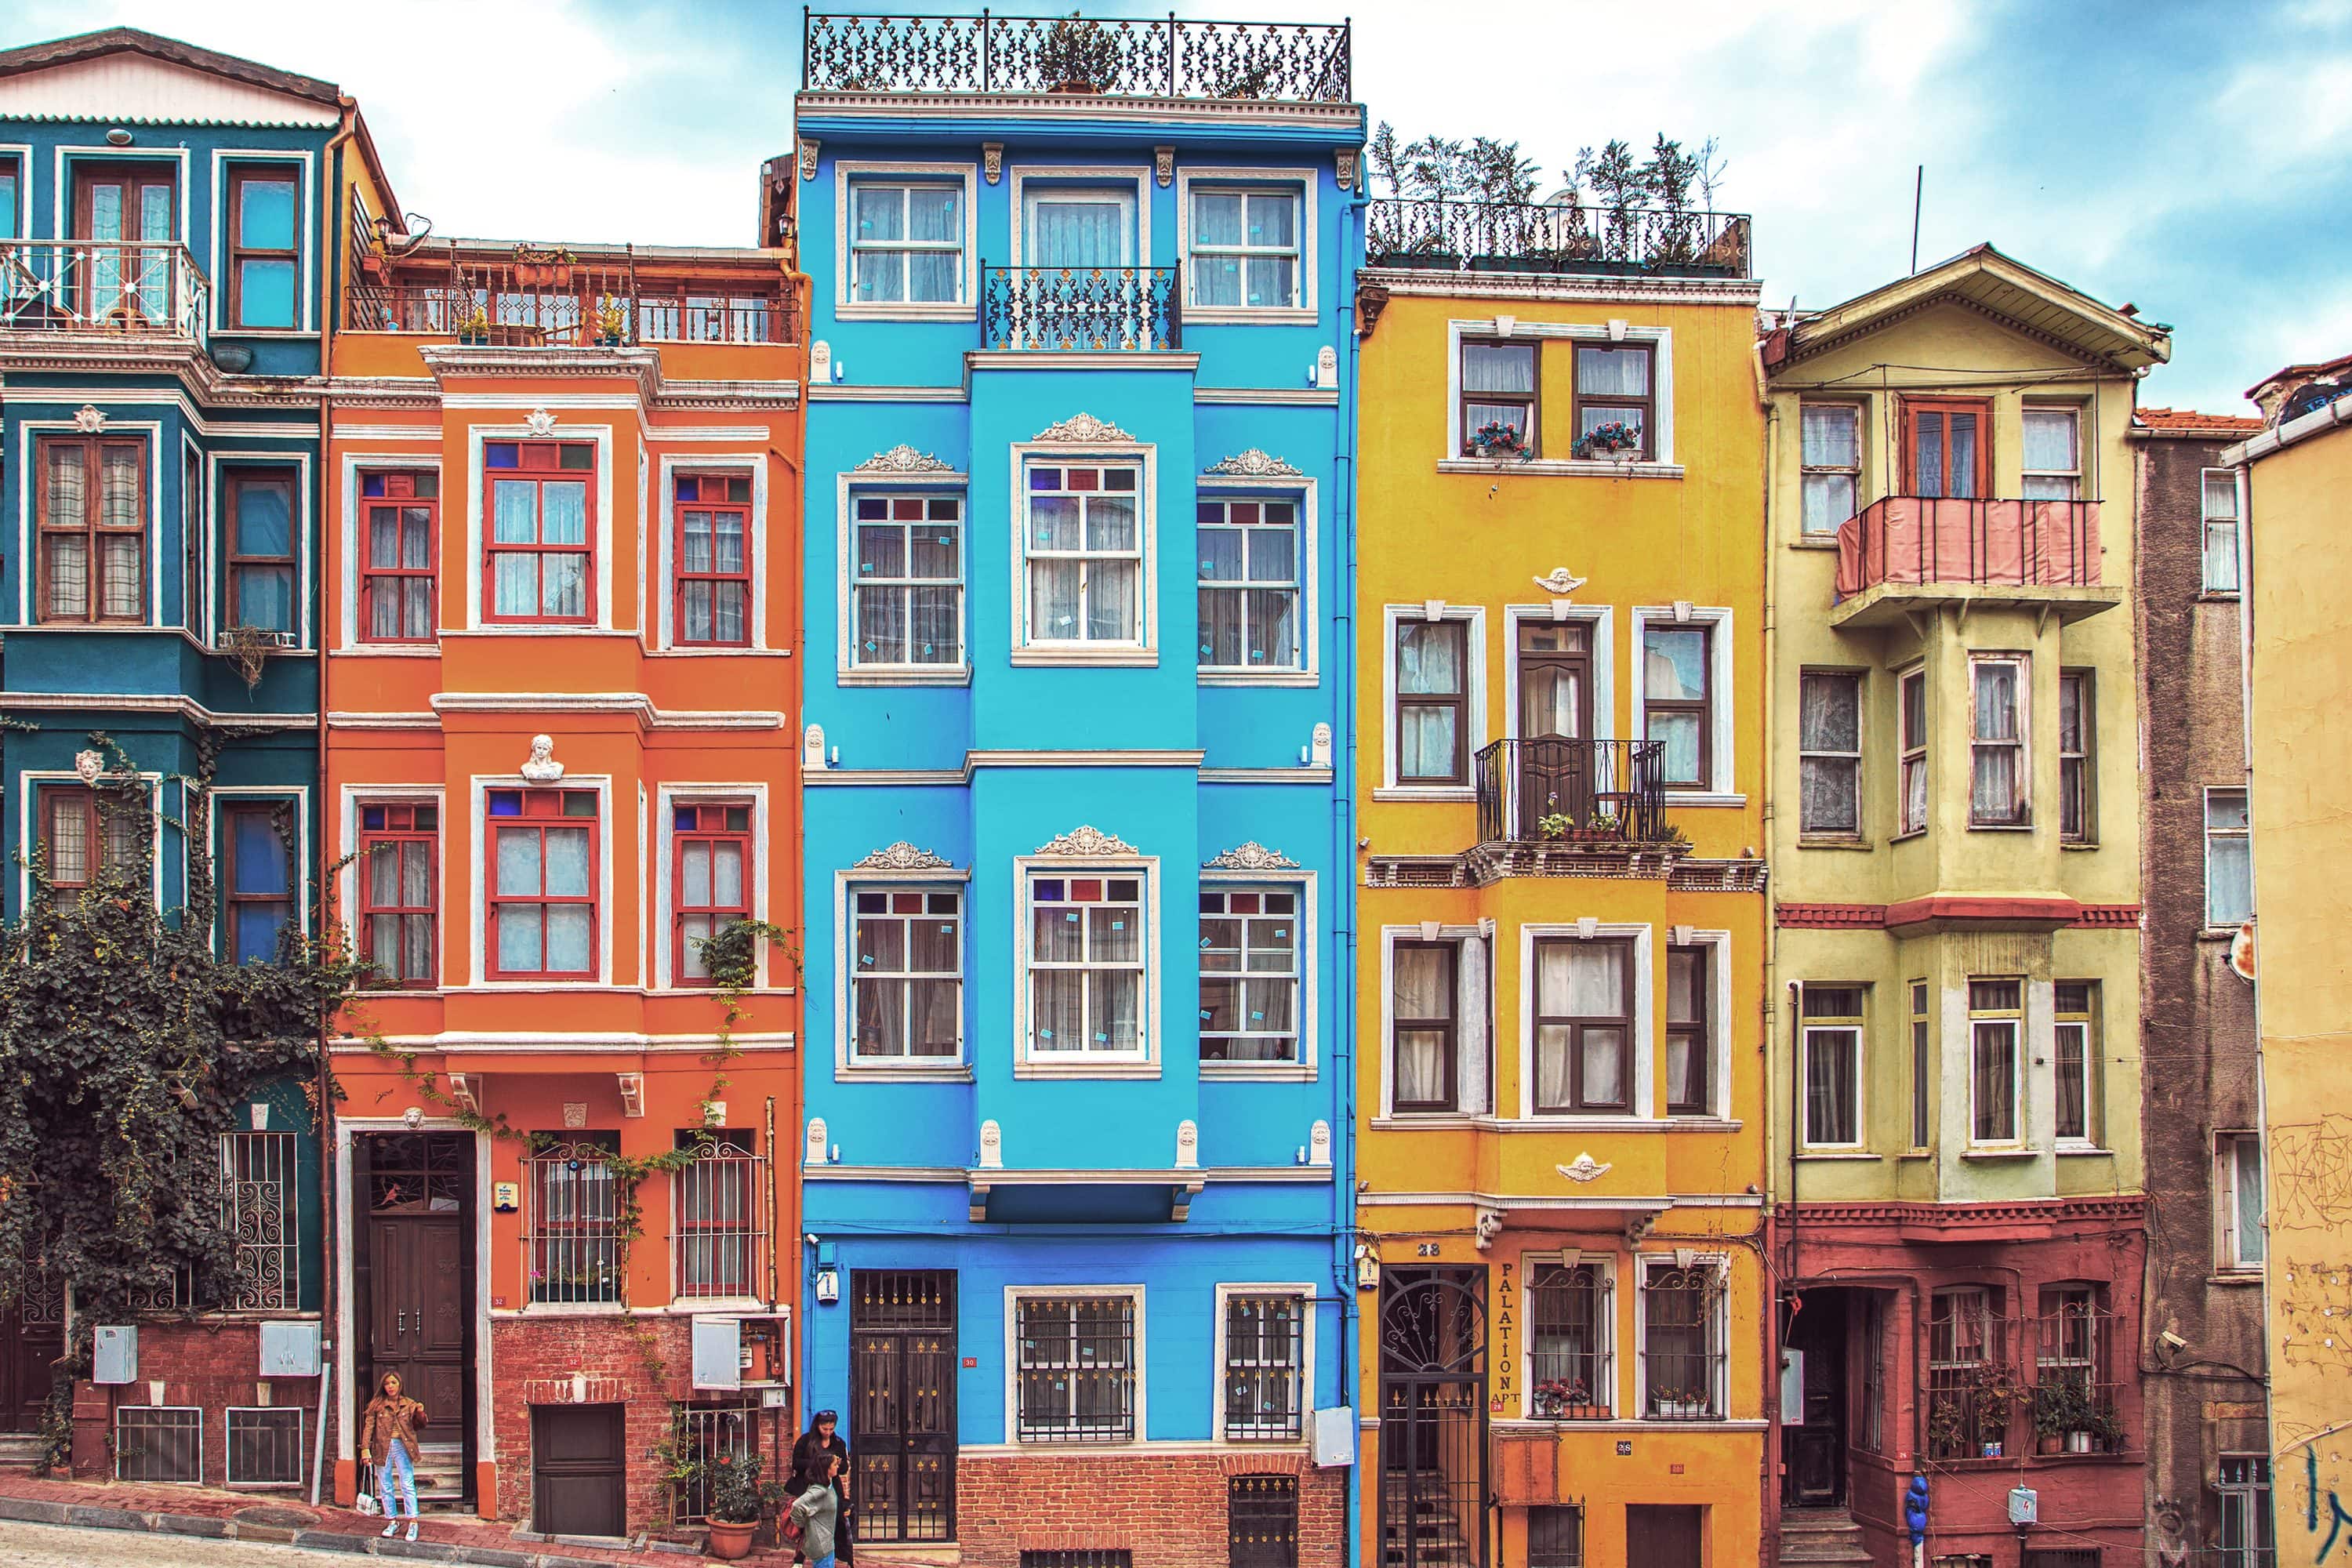 Waterside mansions of Arnavutköy